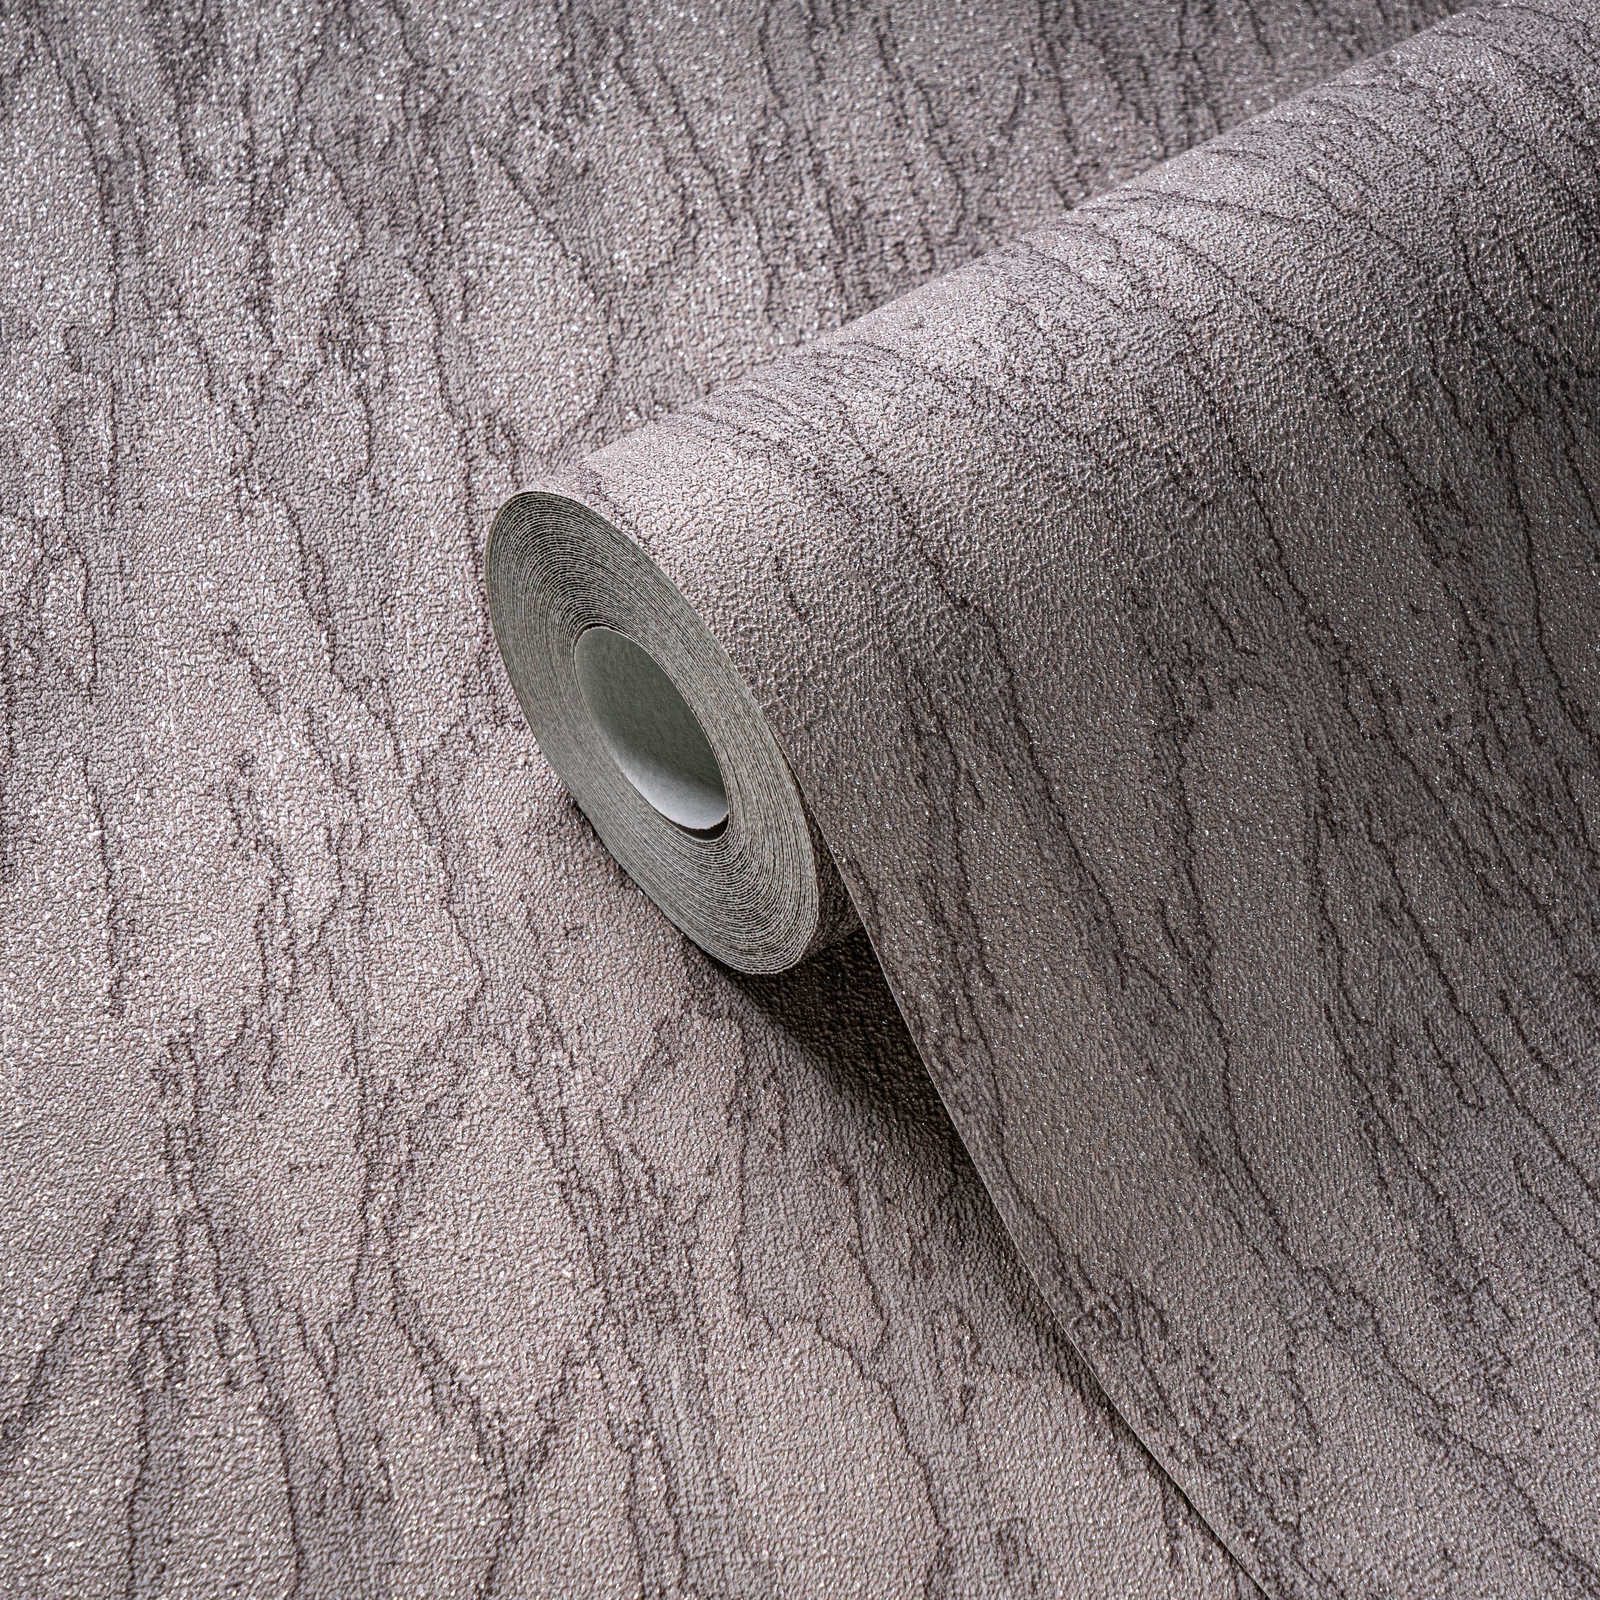             Papel pintado no tejido de aspecto escayolado con acentos y motivo abstracto - gris, beige, plata
        